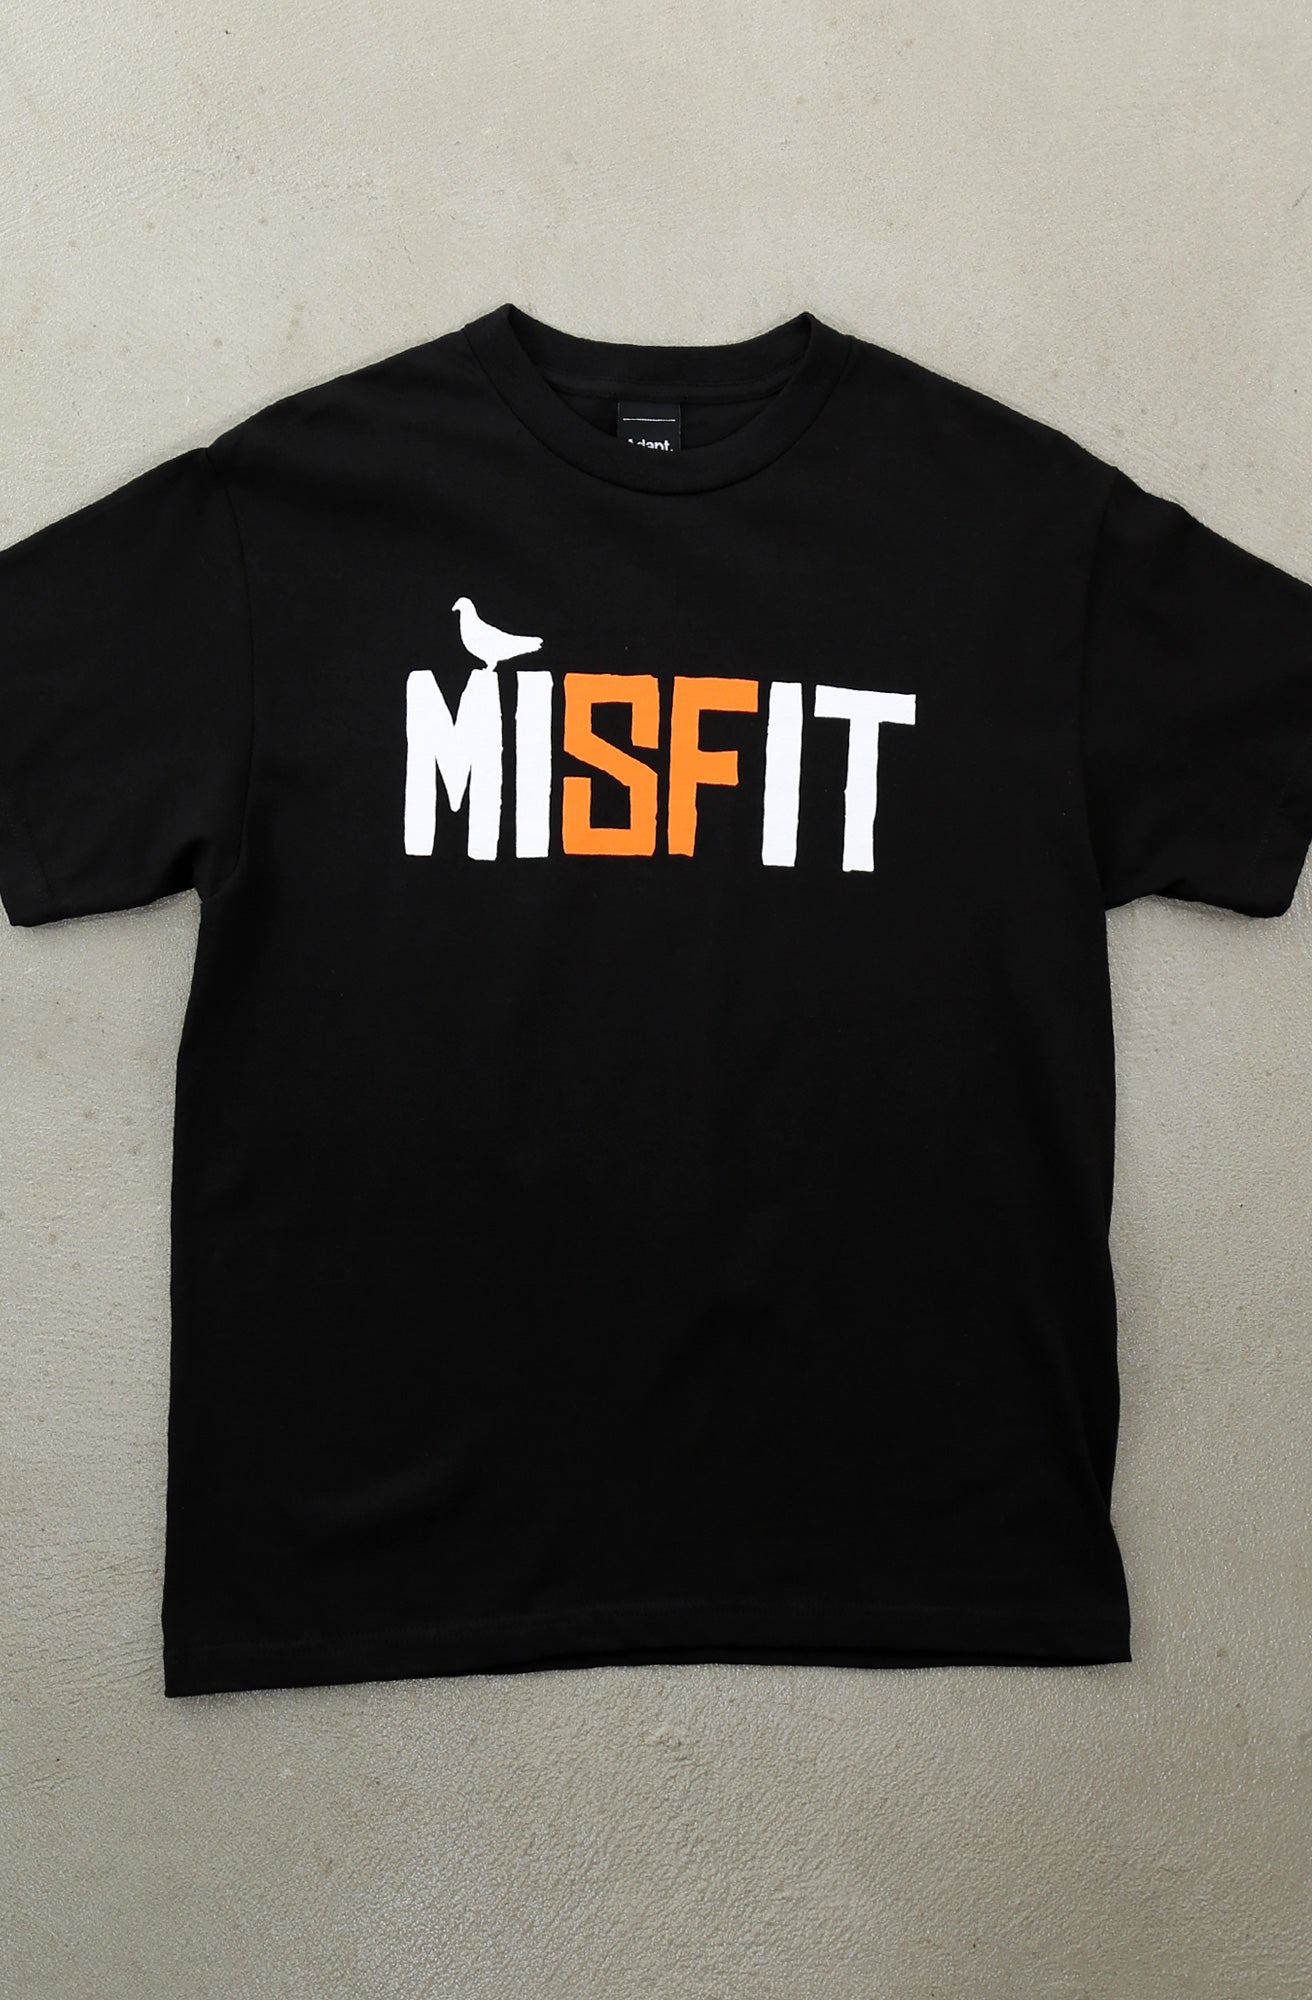 Misfit (Men's Black/Orange Tee)